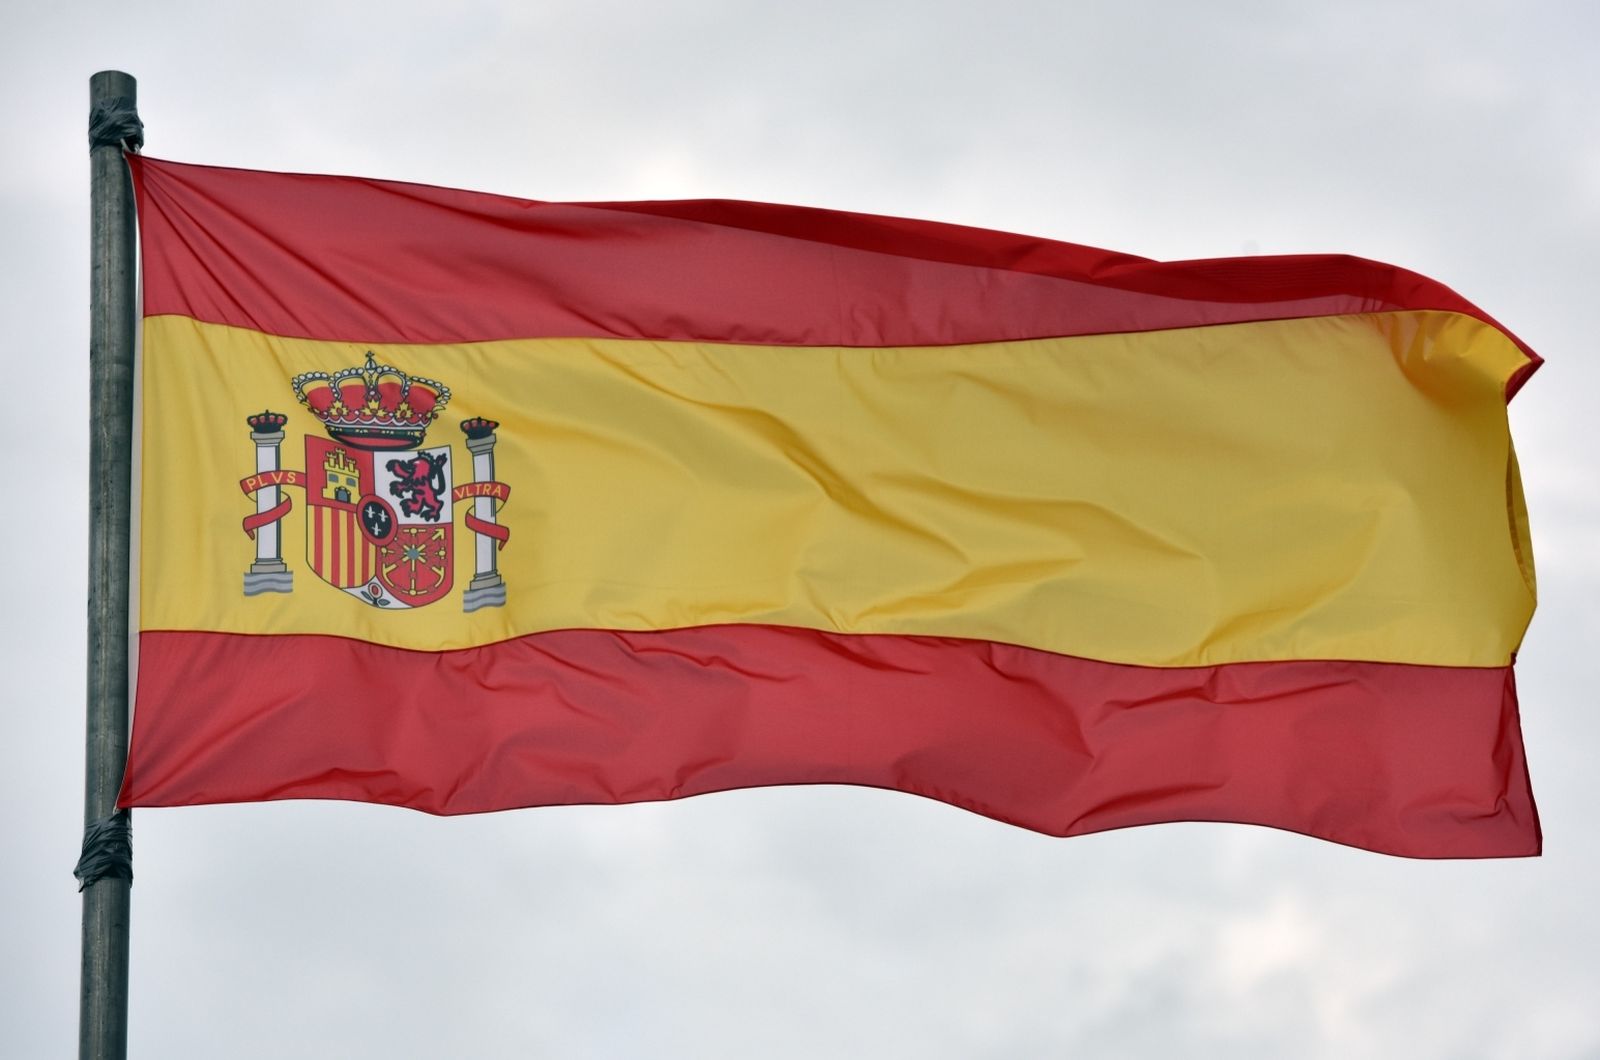 01.06.2019., Sibenik - Drzavna zastava Kraljevine Spanjolske. 
Photo: Hrvoje Jelavic/PIXSELL